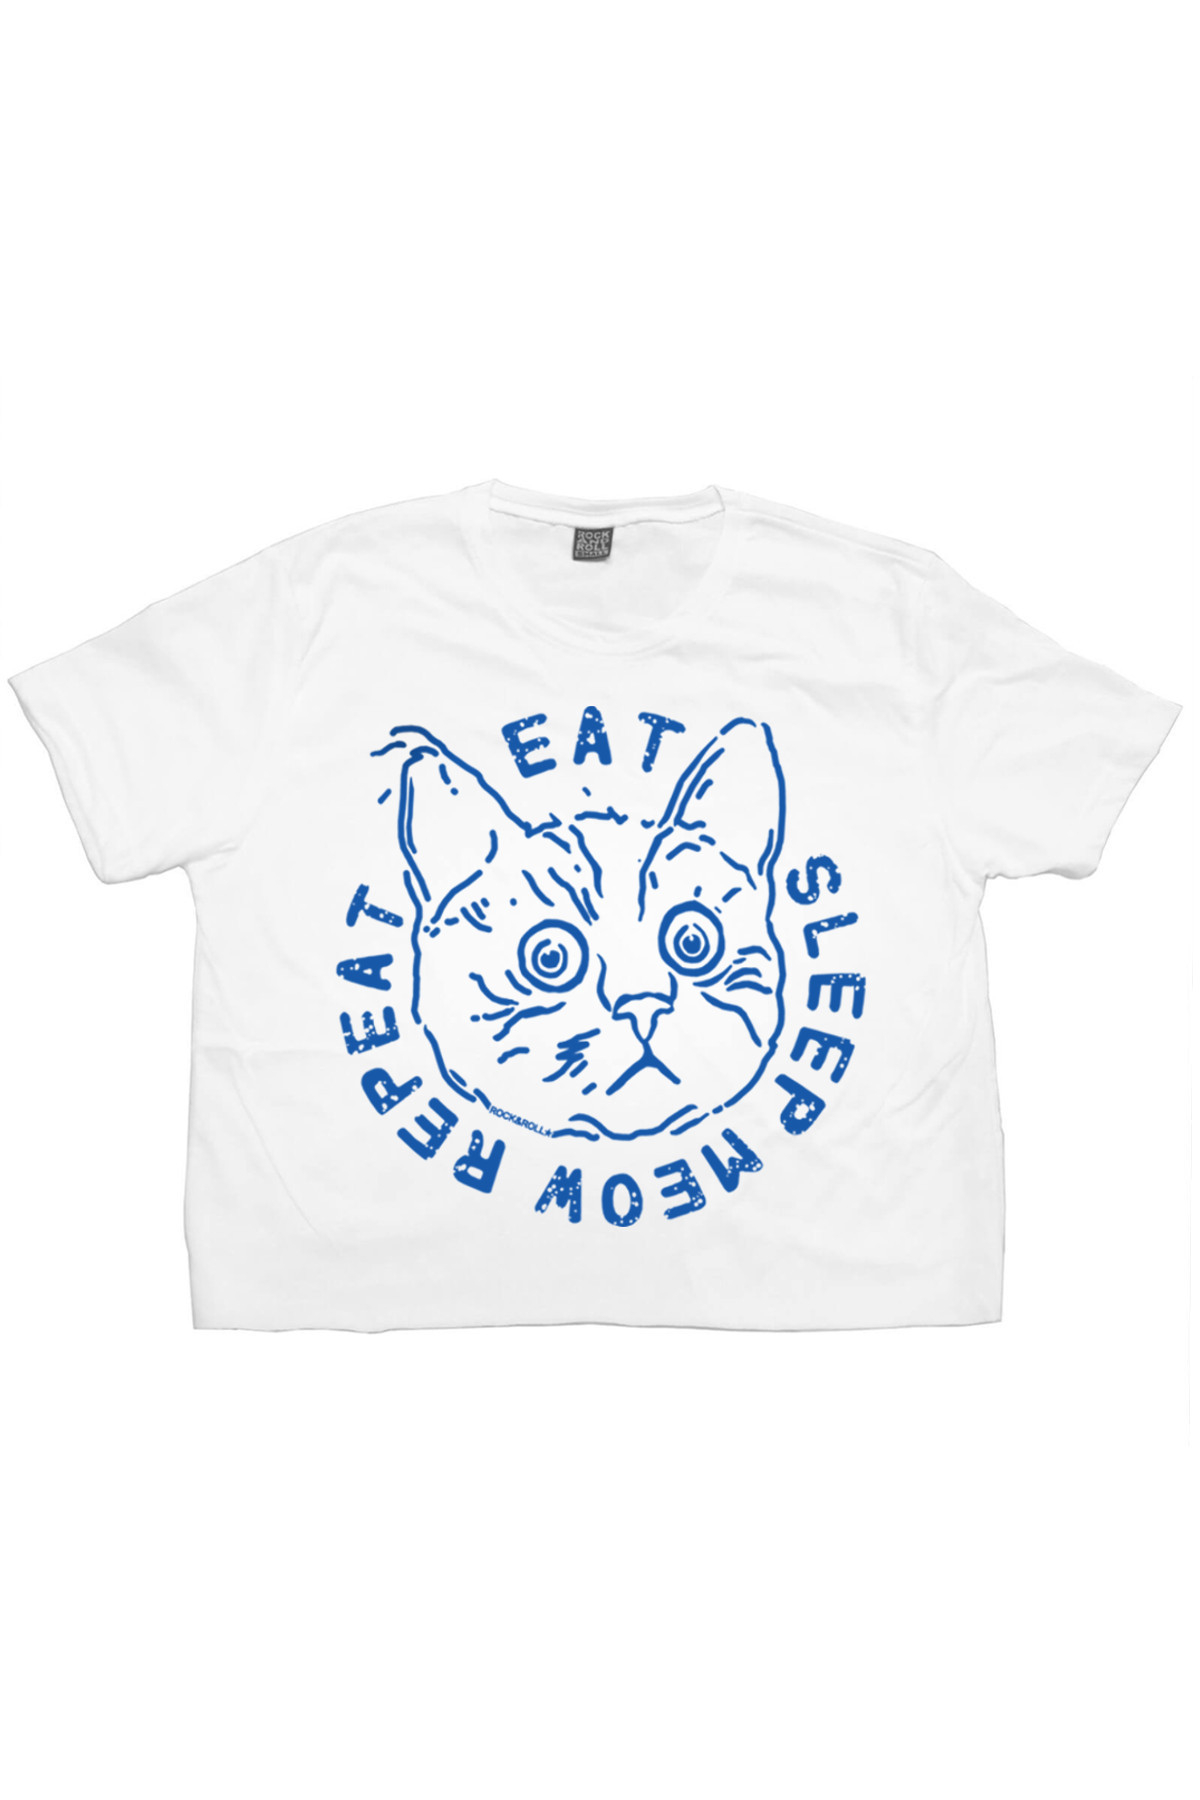 Şaşkın Kedi Beyaz Kısa, Kesik Crop Top Kadın T-shirt